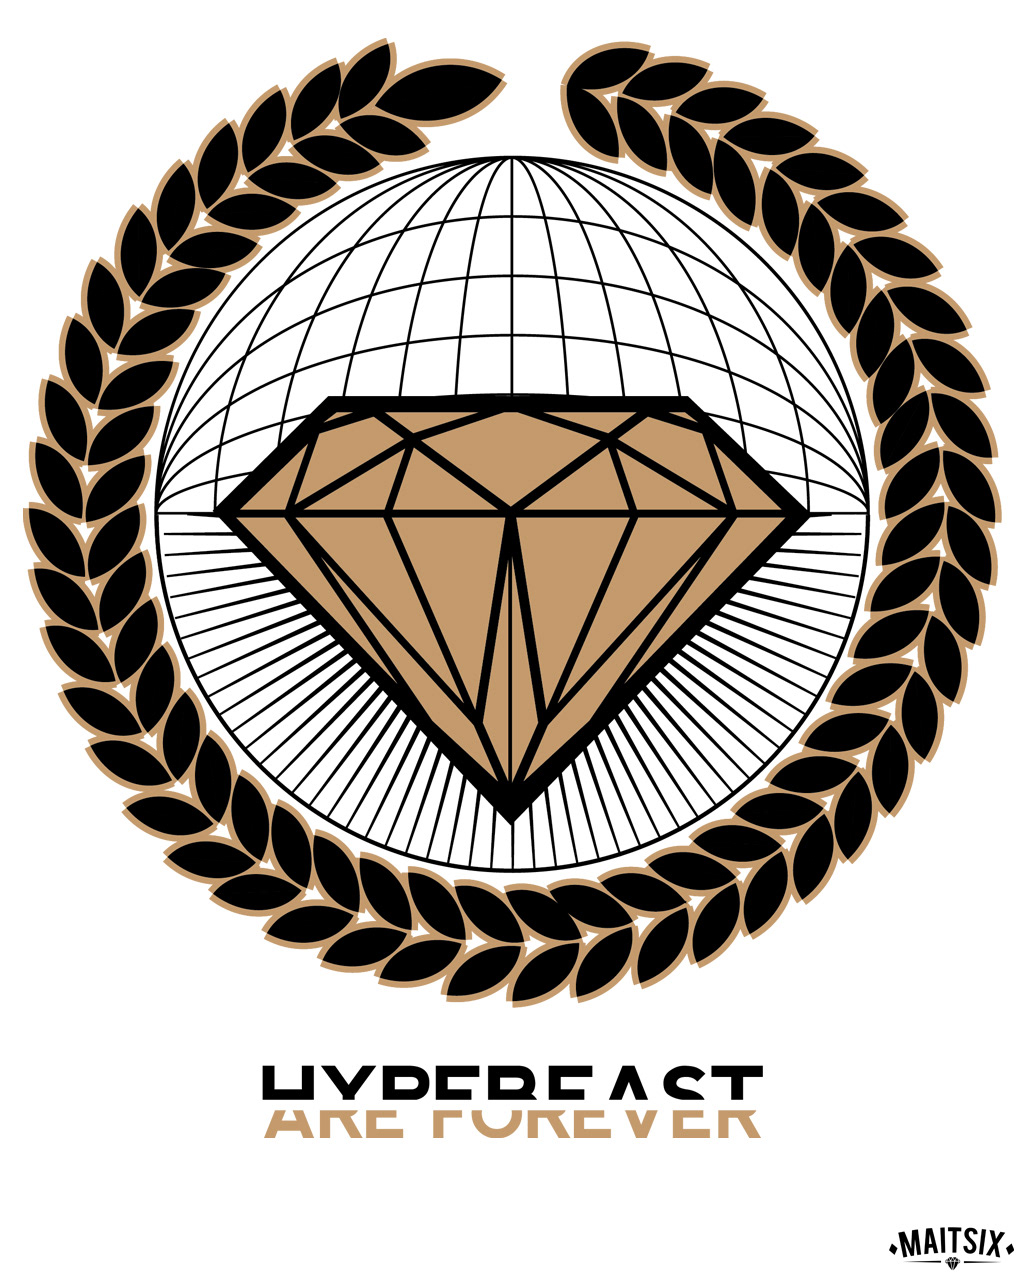 hypebeast byvm contest tees black White gold forever diamond 